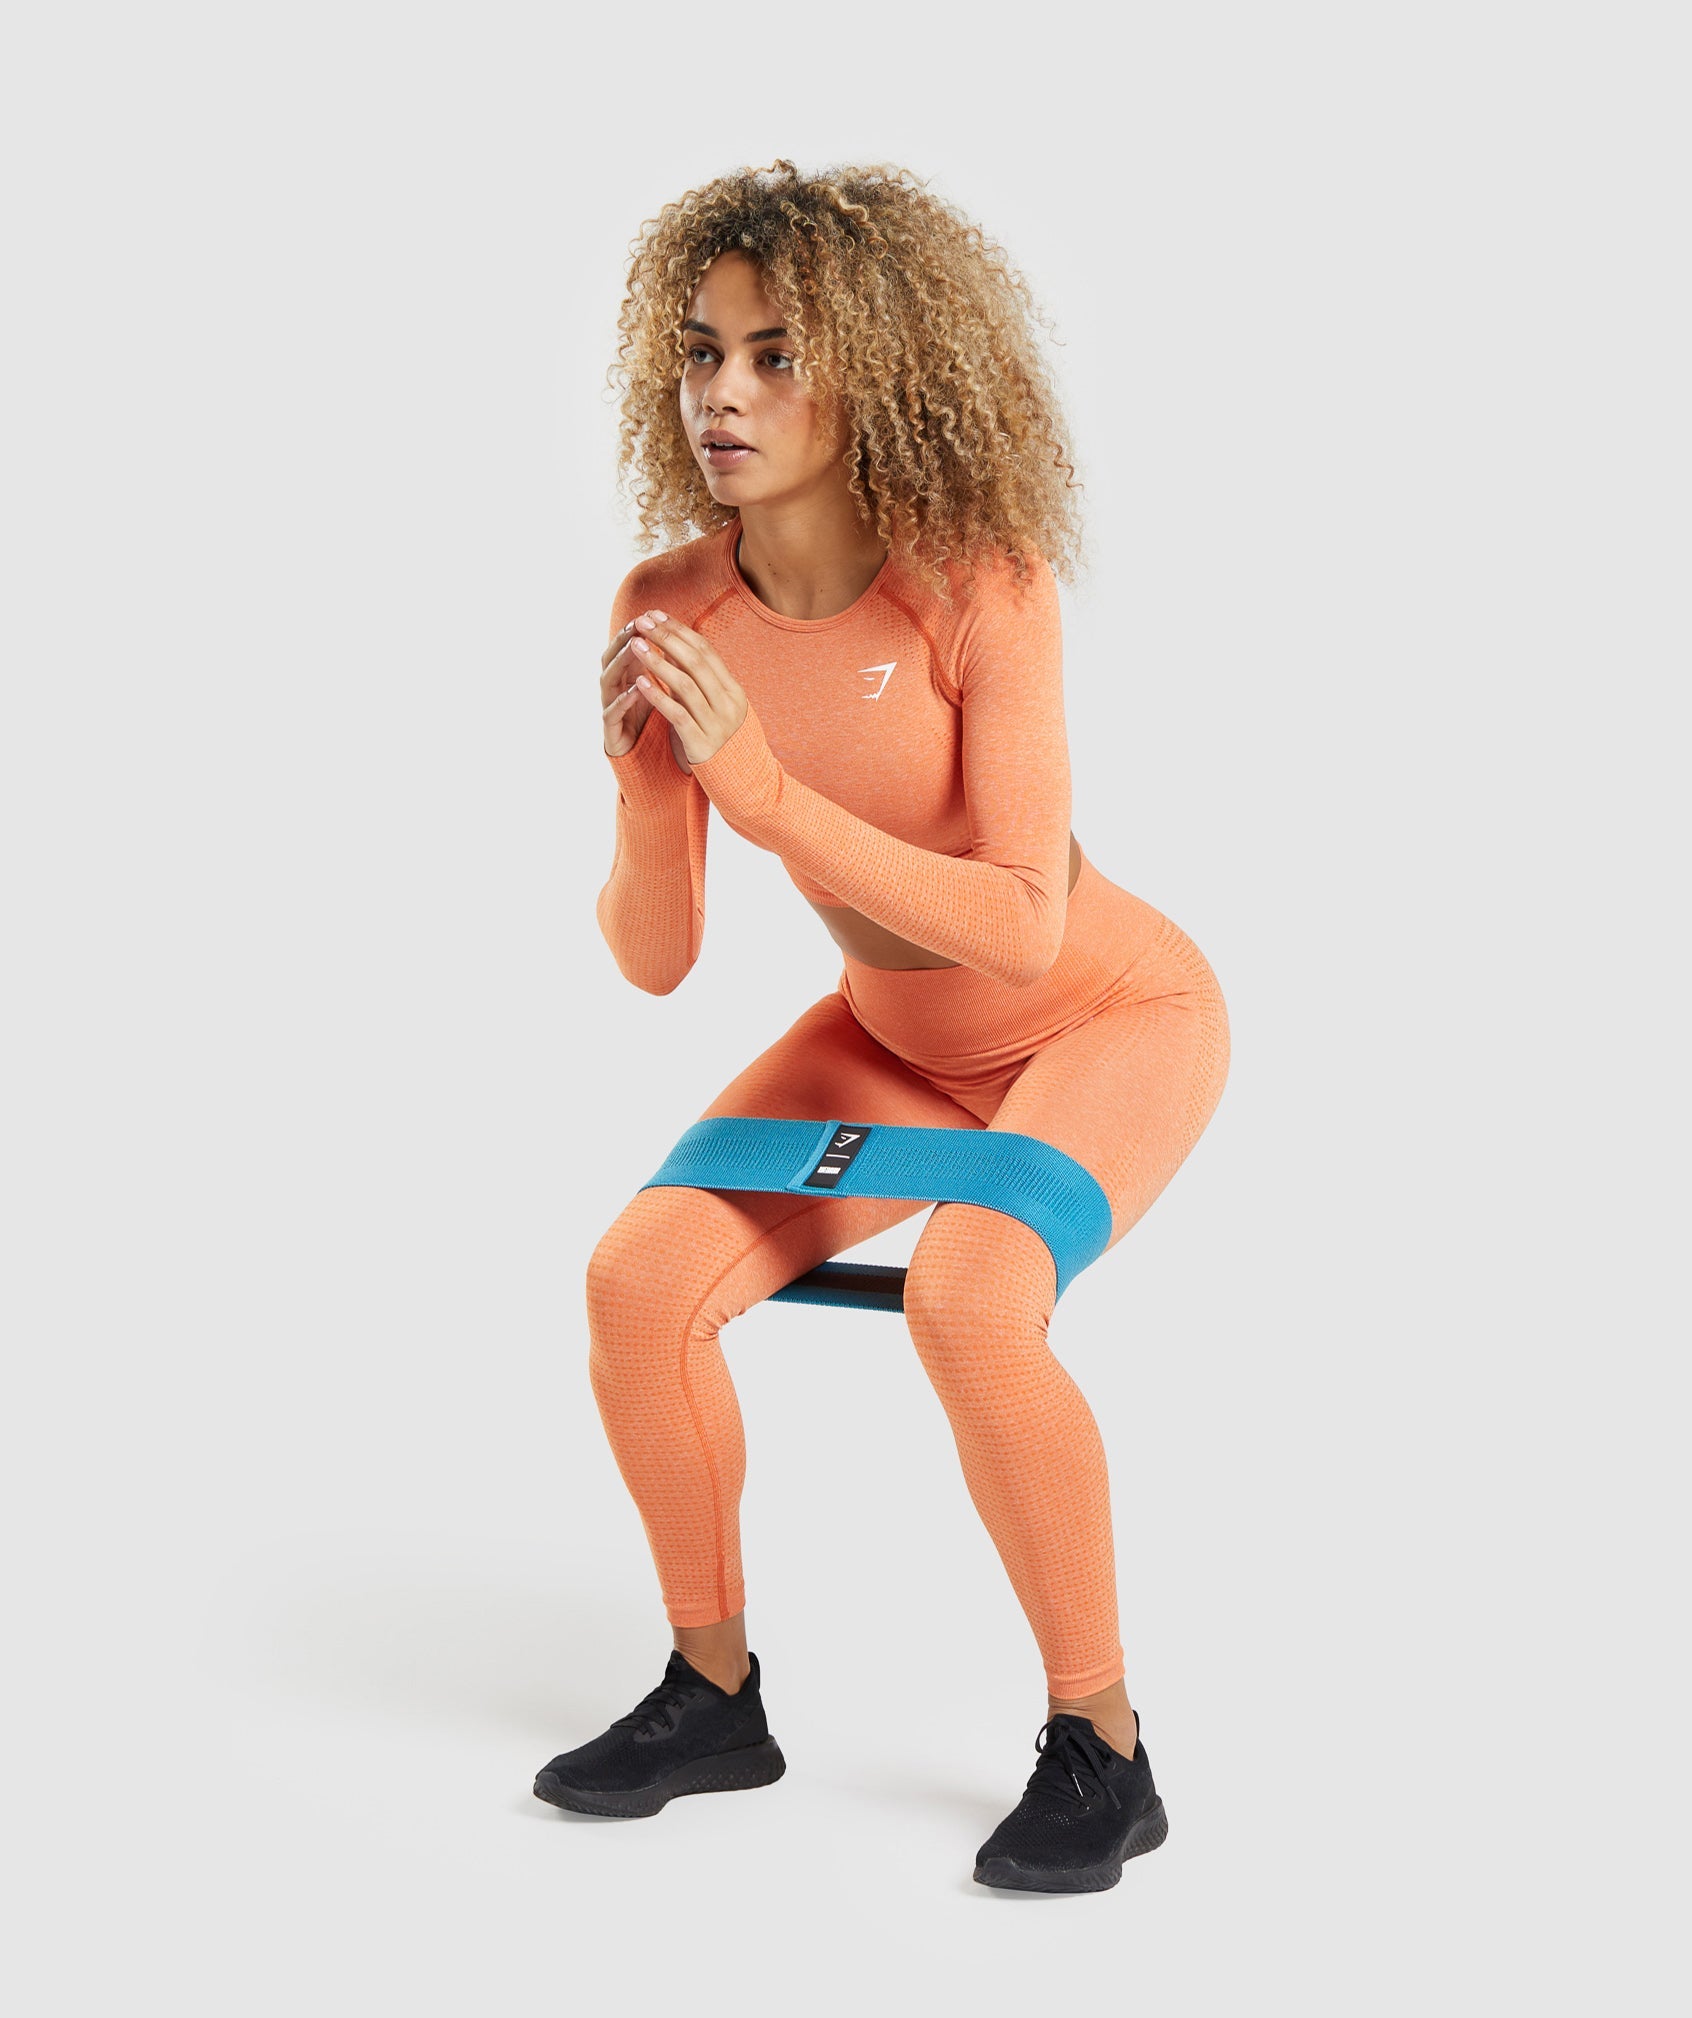 Women's training leggings Gymshark Studio earth orange 